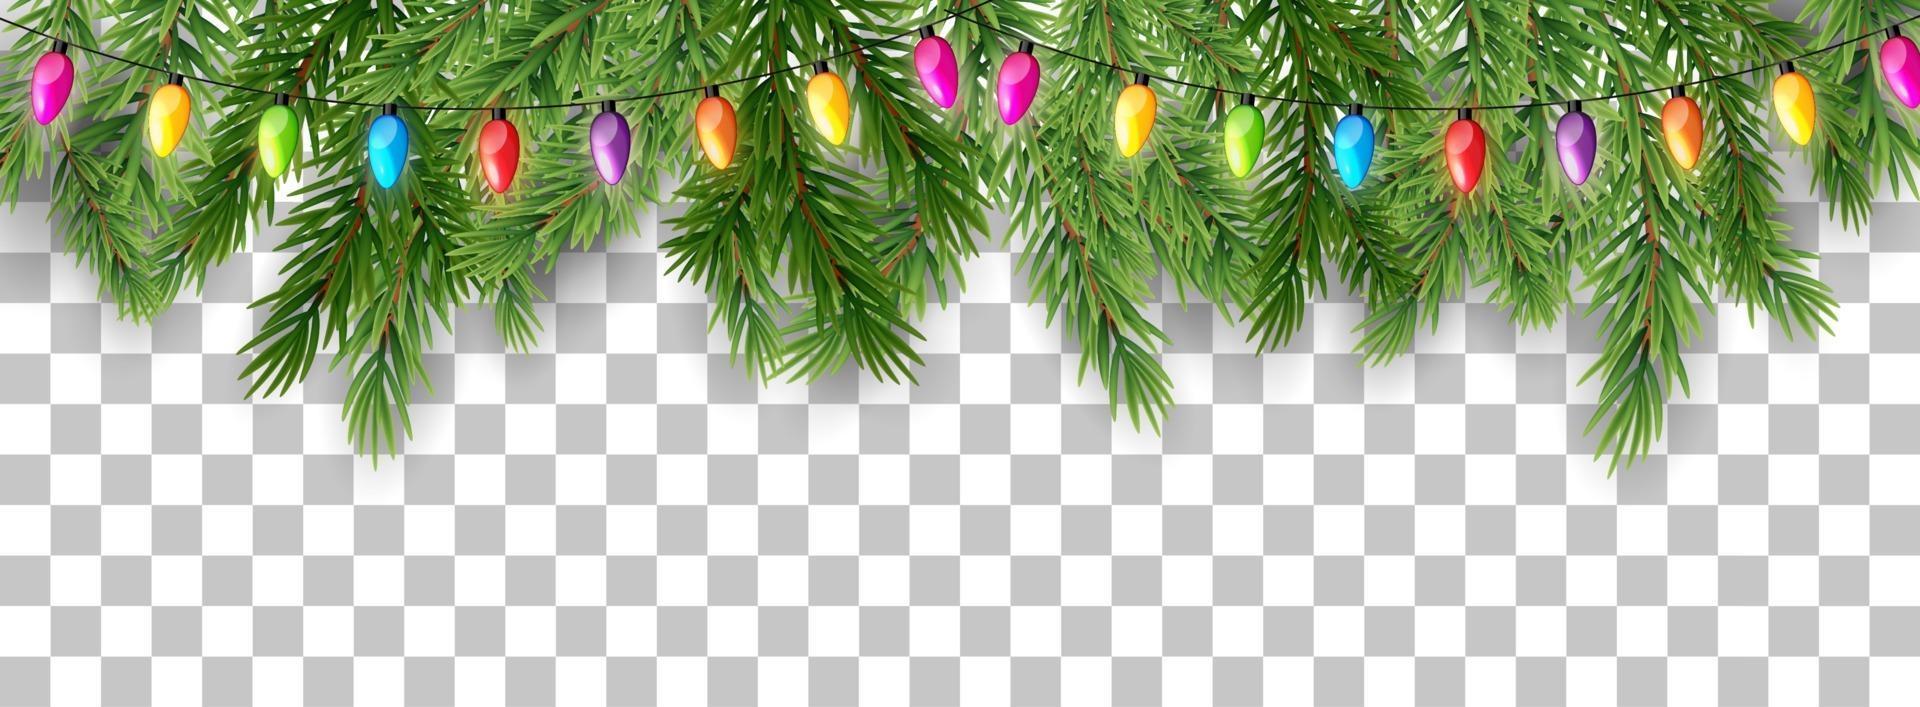 Feliz Navidad y feliz año nuevo borde de ramas de árboles y cuentas de guirnalda sobre fondo transparente. ilustración vectorial vector